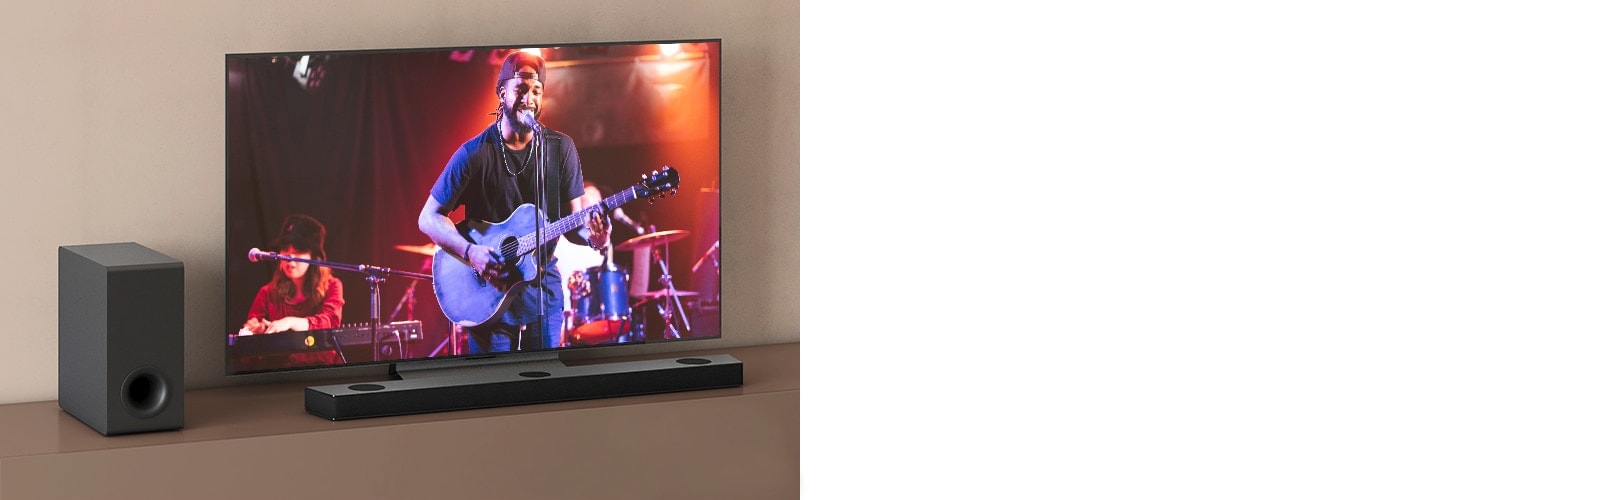 تلویزیون ال‌جی کنسرتی را نشان می‌دهد و ساندبار ال‌جی در زیر تلویزیون قرار دارد.  در سمت چپ، ساب ووفر در قفسه قهوه‌ای قرار دارد. 